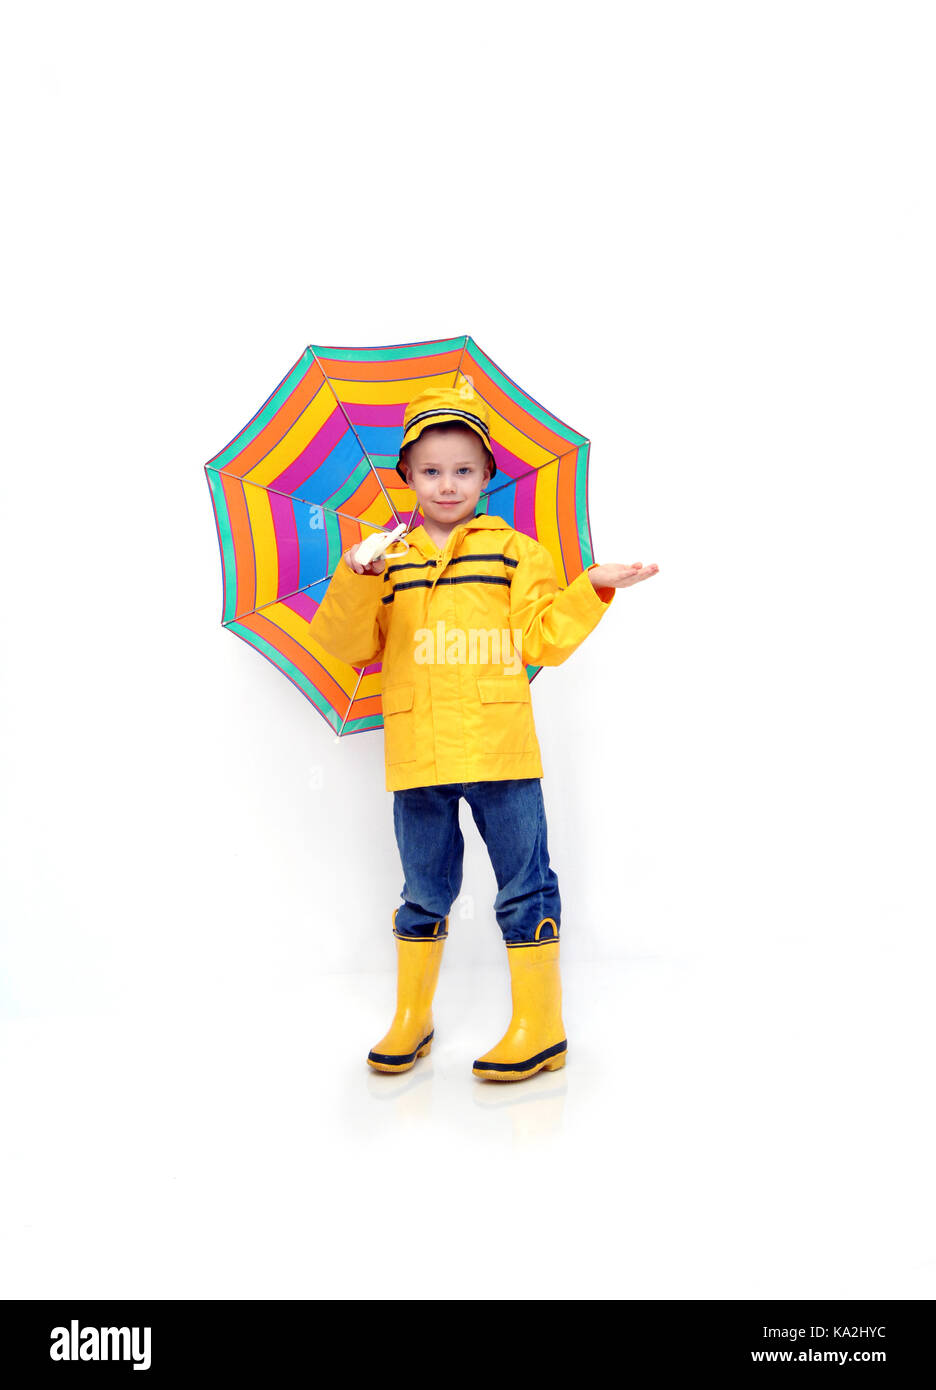 Little boy Kontrollen für Regen, während in einem gelben Slicker und Gummistiefel und Hut bekleidet. Er ist ein multi-gestreifte Schirm in einem weißen Raum. Stockfoto